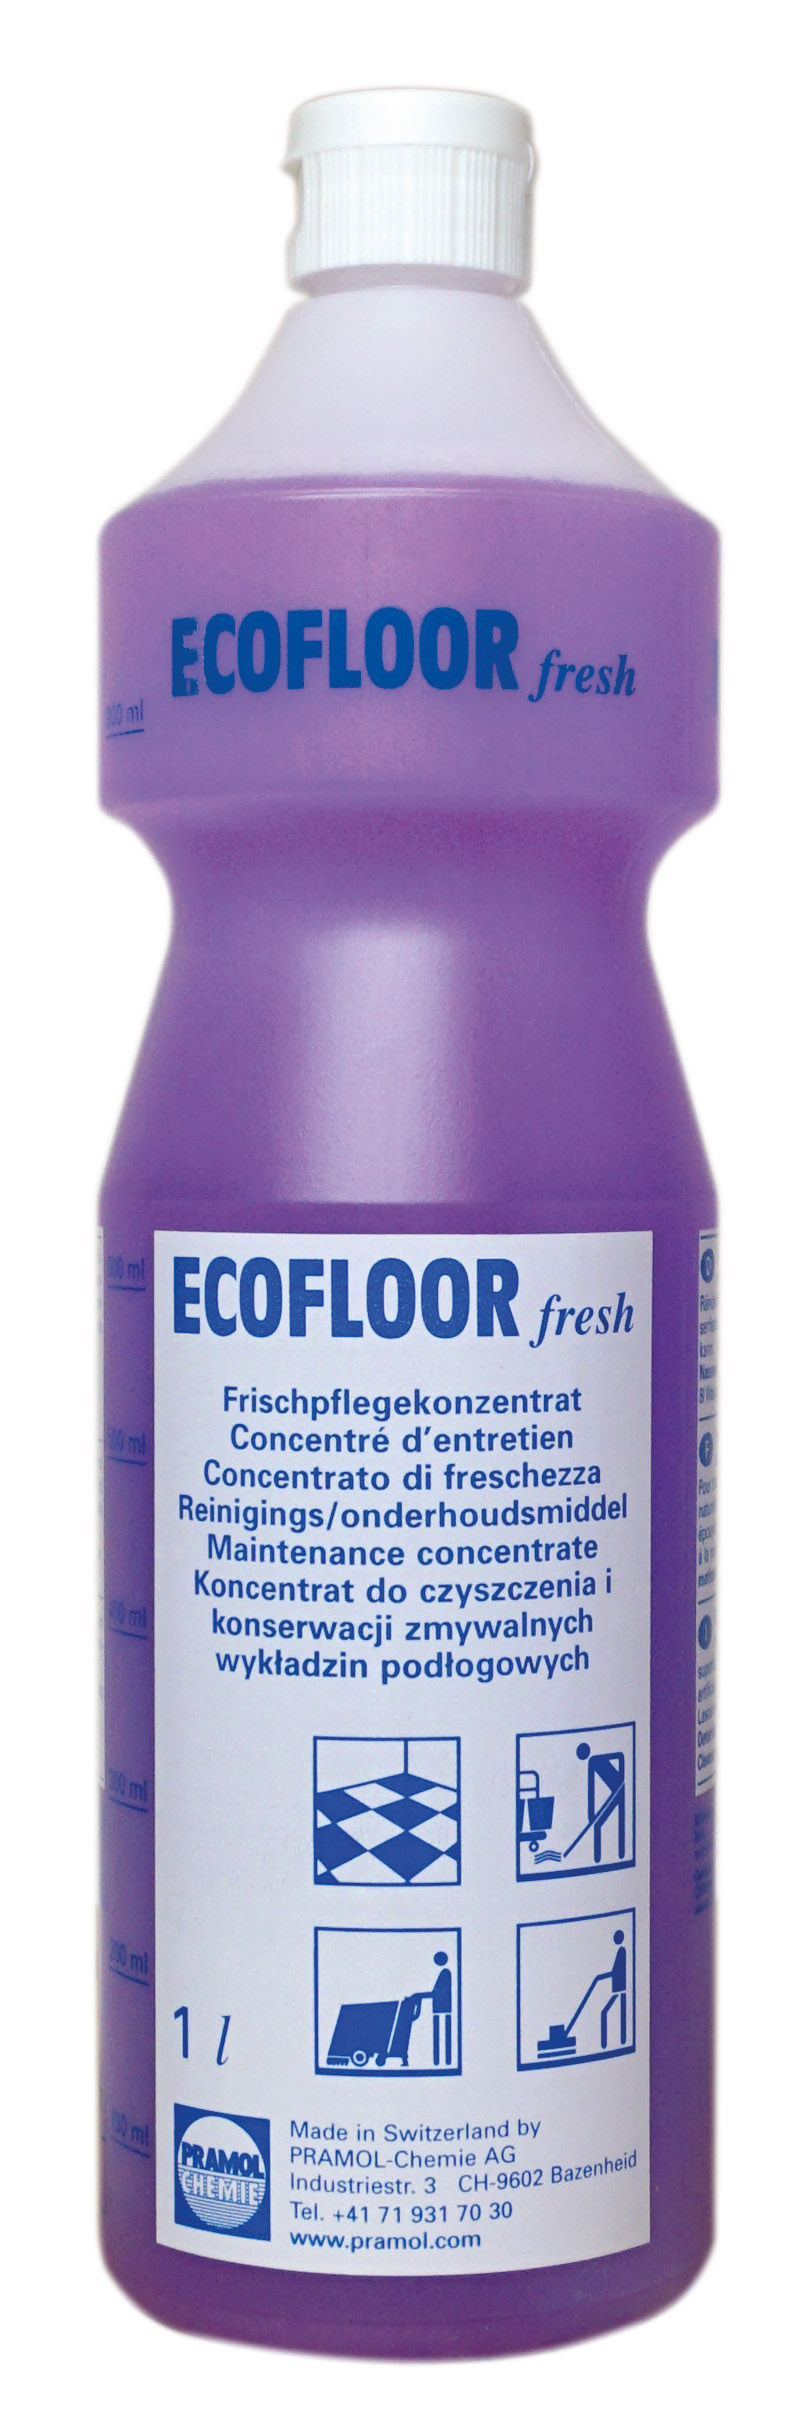 Pramol ECOFLOOR fresh, Wischpflege auf Polymerbasis, erfüllt DIN18032, 1 Liter